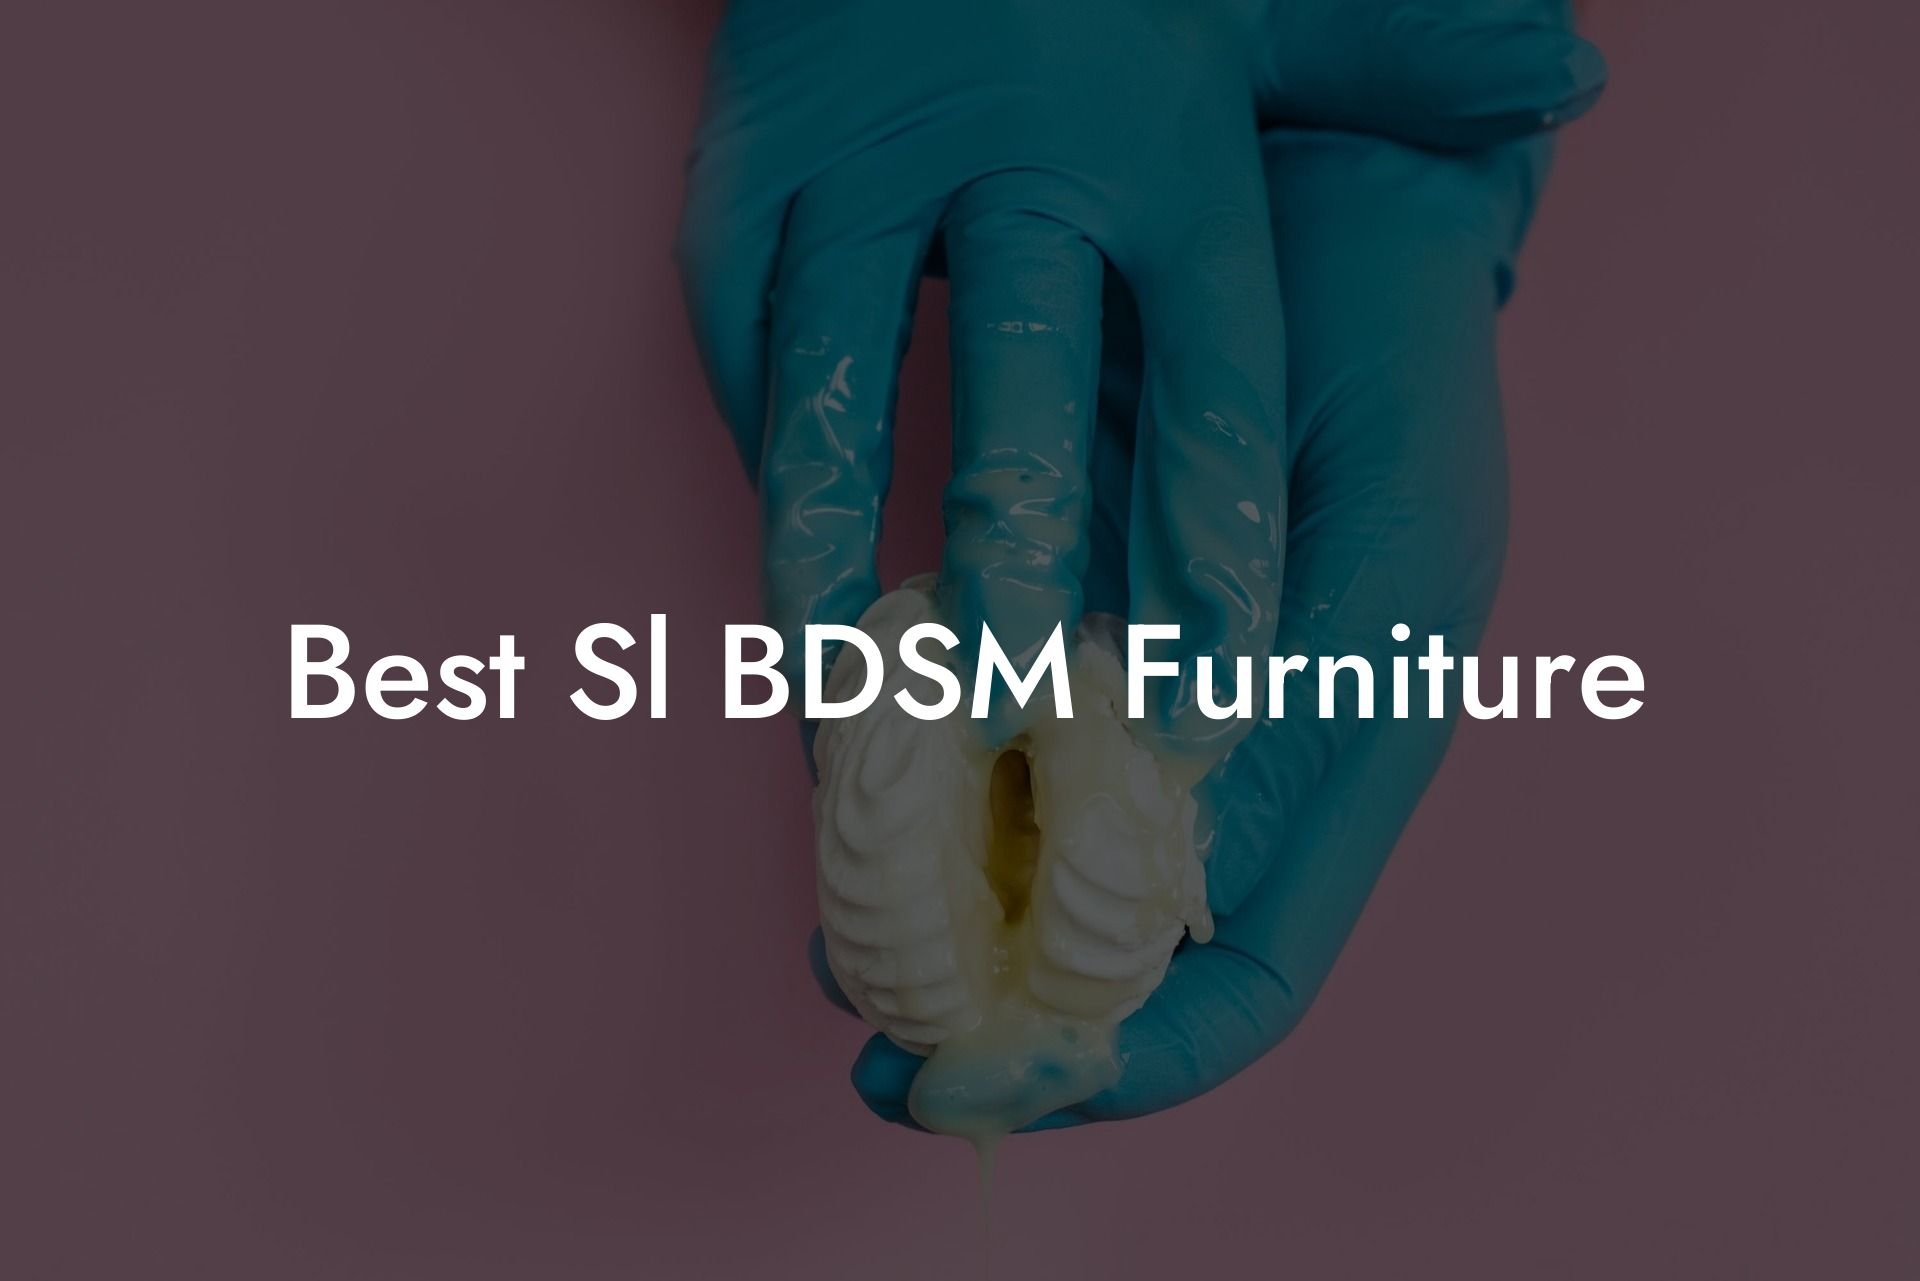 Best Sl BDSM Furniture